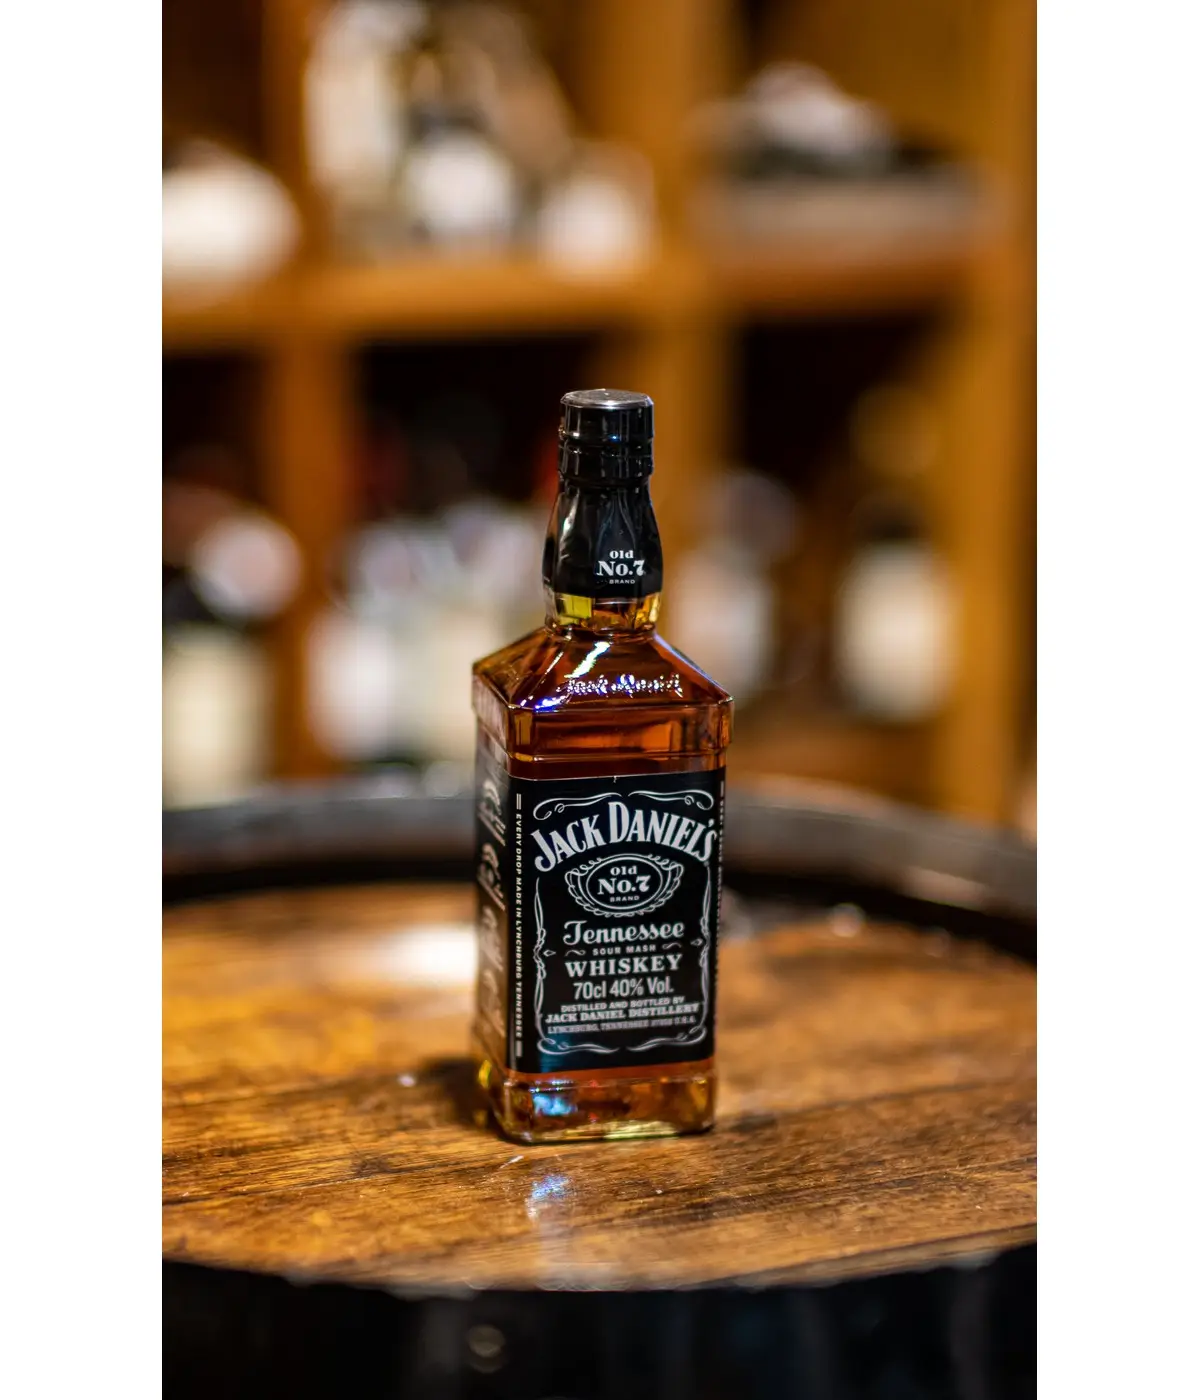 Whisky Old n°7 JACK DANIEL'S